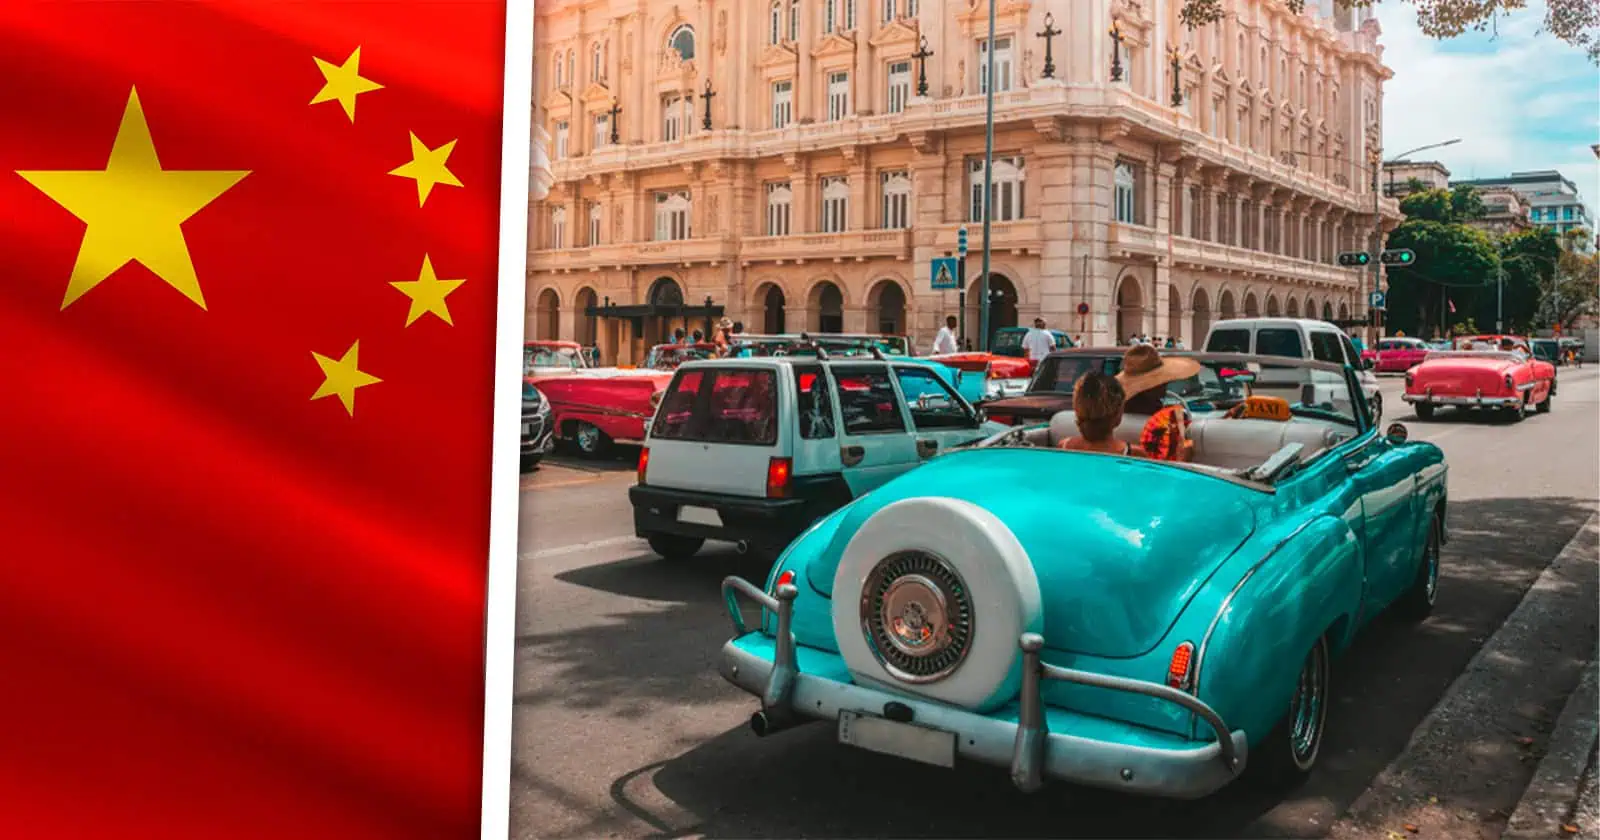 Se Dispara la Búsqueda del Destino Cuba en China Tras Declarar Libre Visado Para los Chinos en la Isla